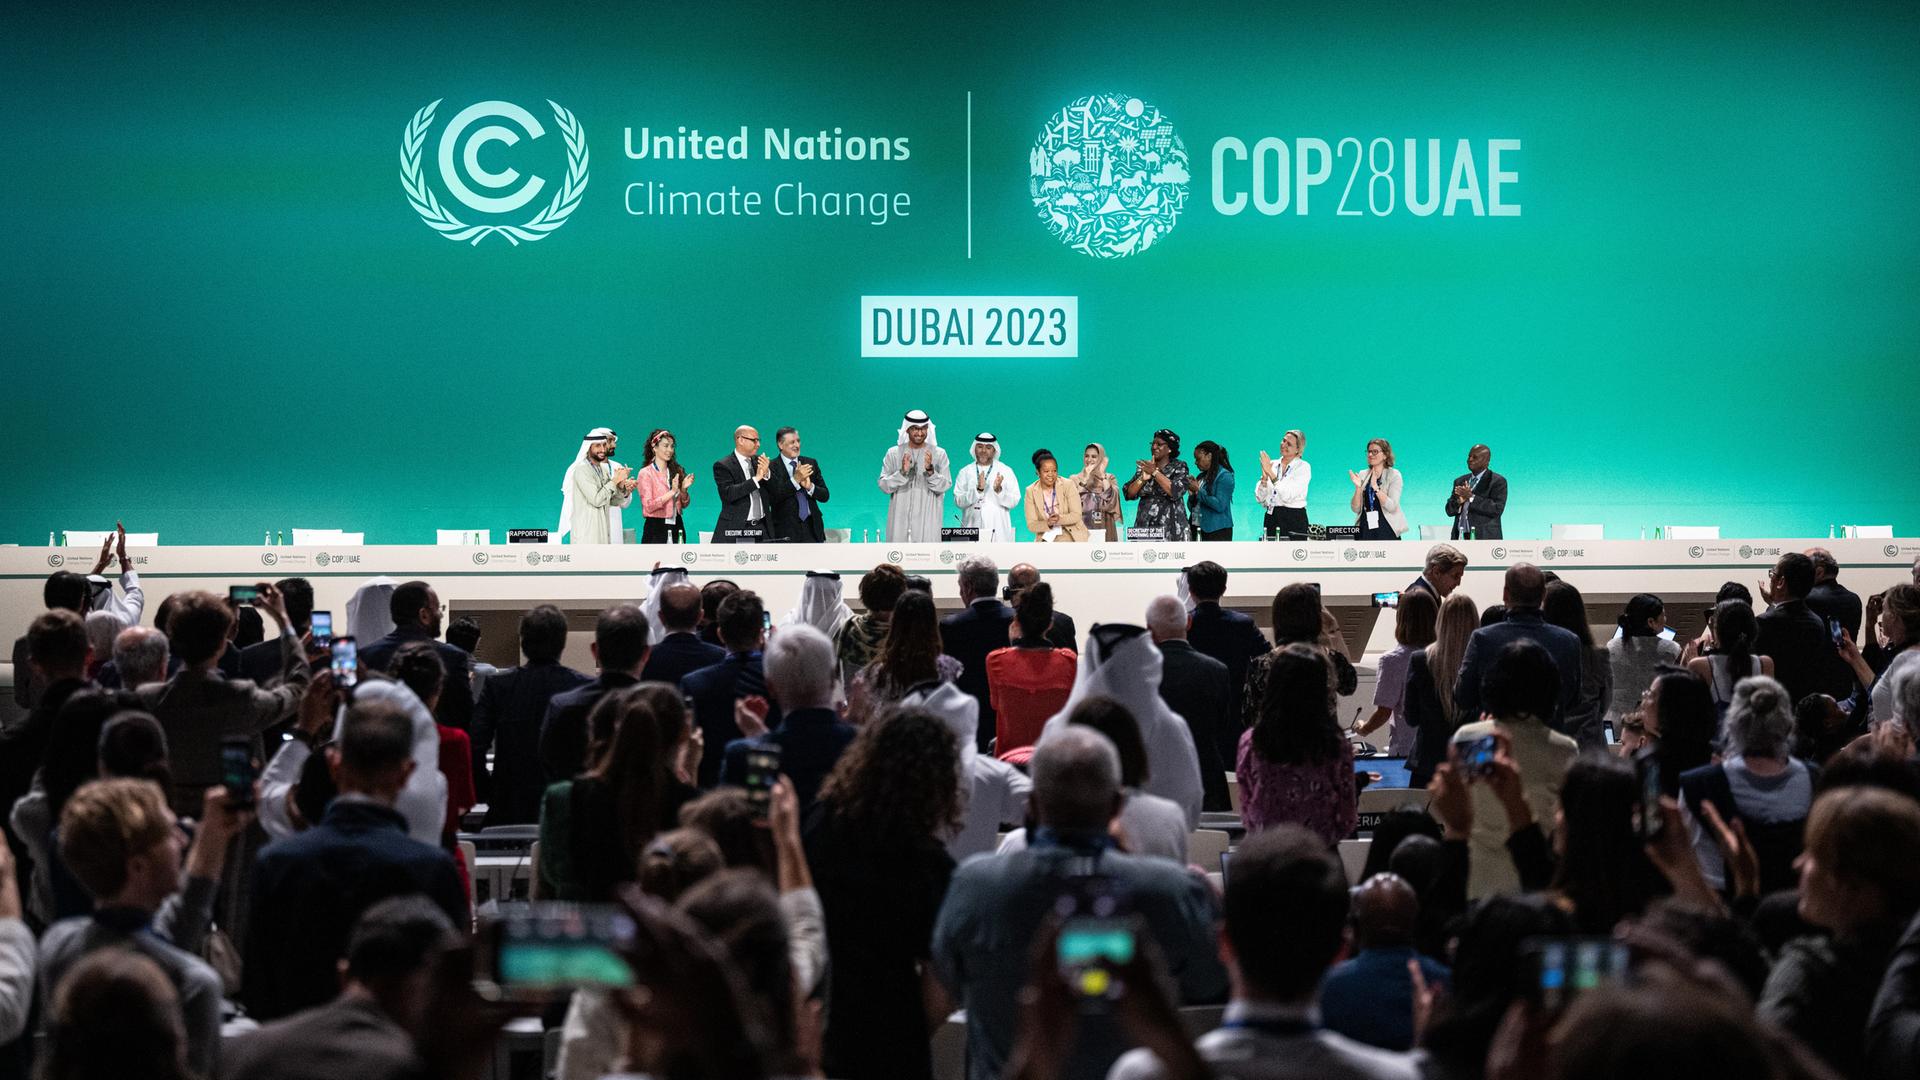 Blick auf das Podium der COP28 - Vertreter unterschiedlicher Länder stehen und applaudieren